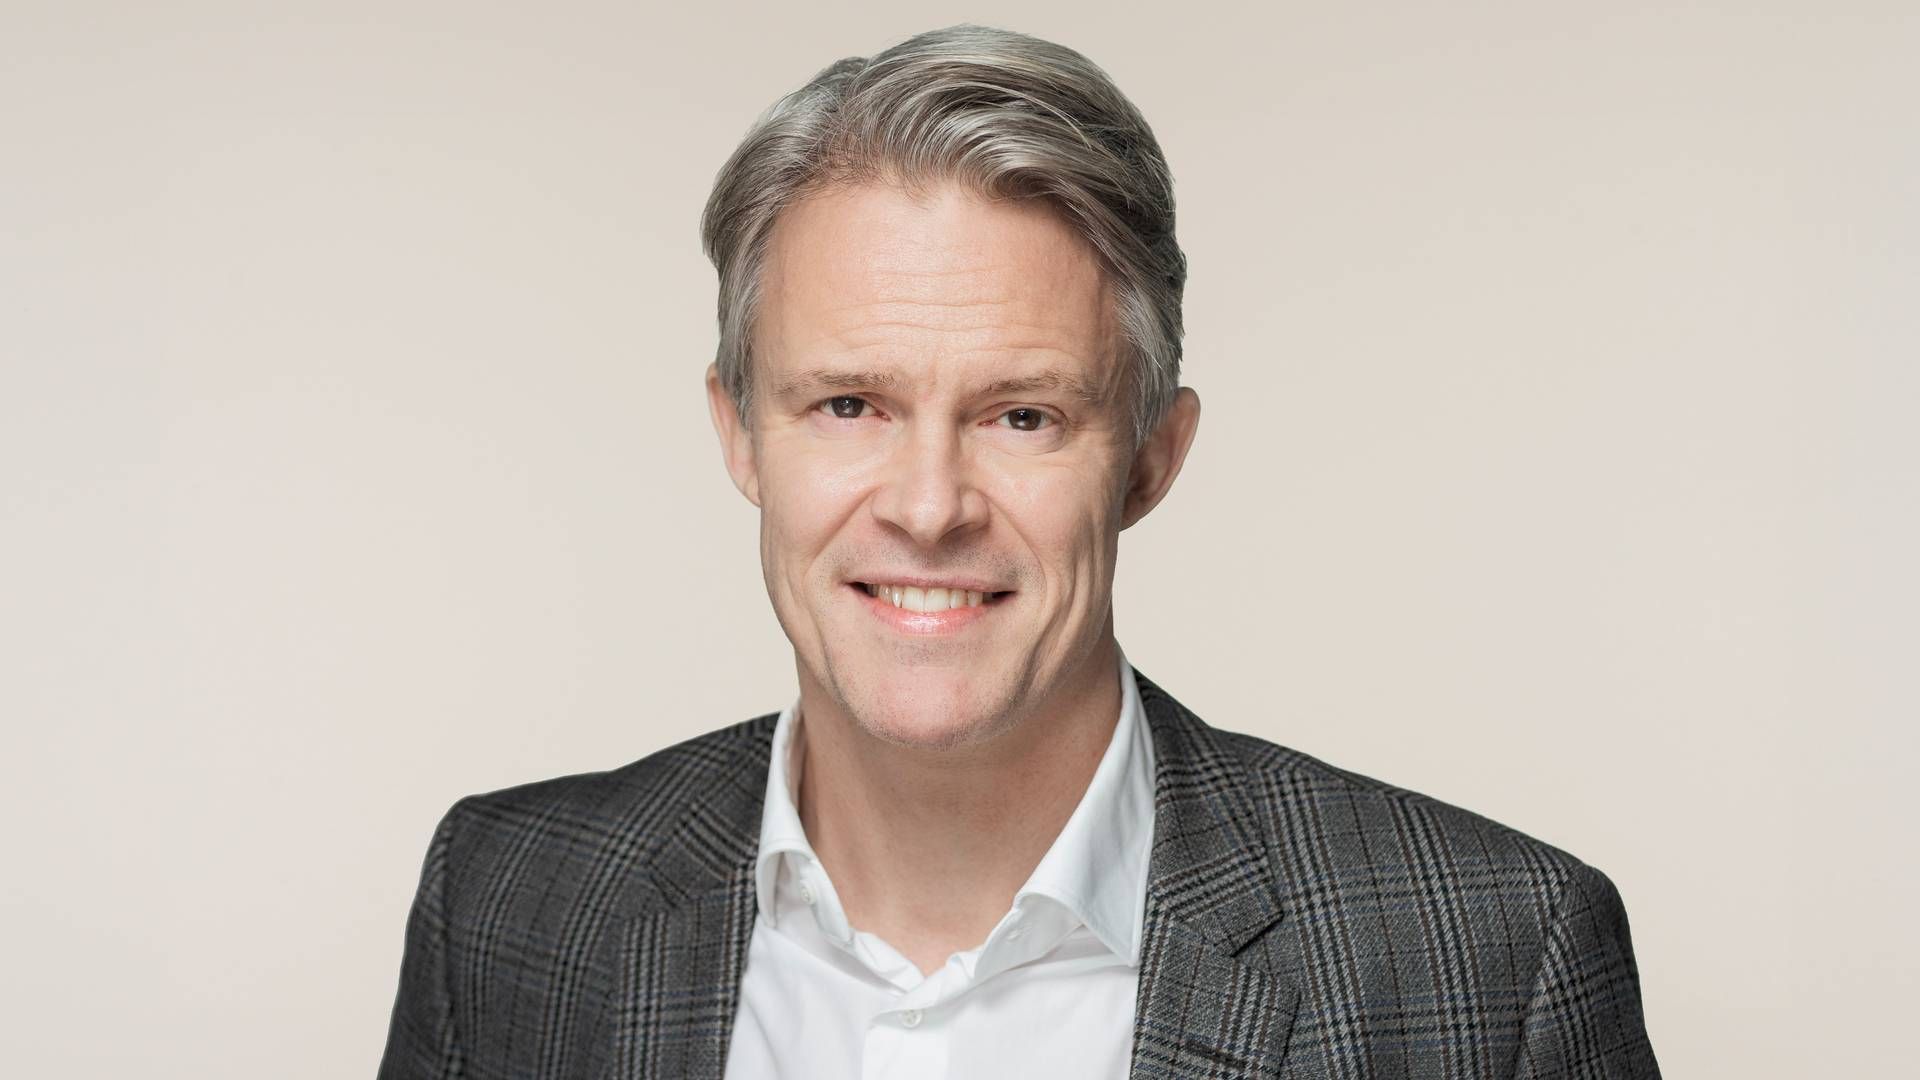 "Vi kunne nemt få volumen ved bare at sælge os billigere," siger Kommerciel direktør i TV 2 Stig Møller Christensen om den mindre end antagede vækst i Play-abonnenter. | Foto: TV 2/Steen Brogaard